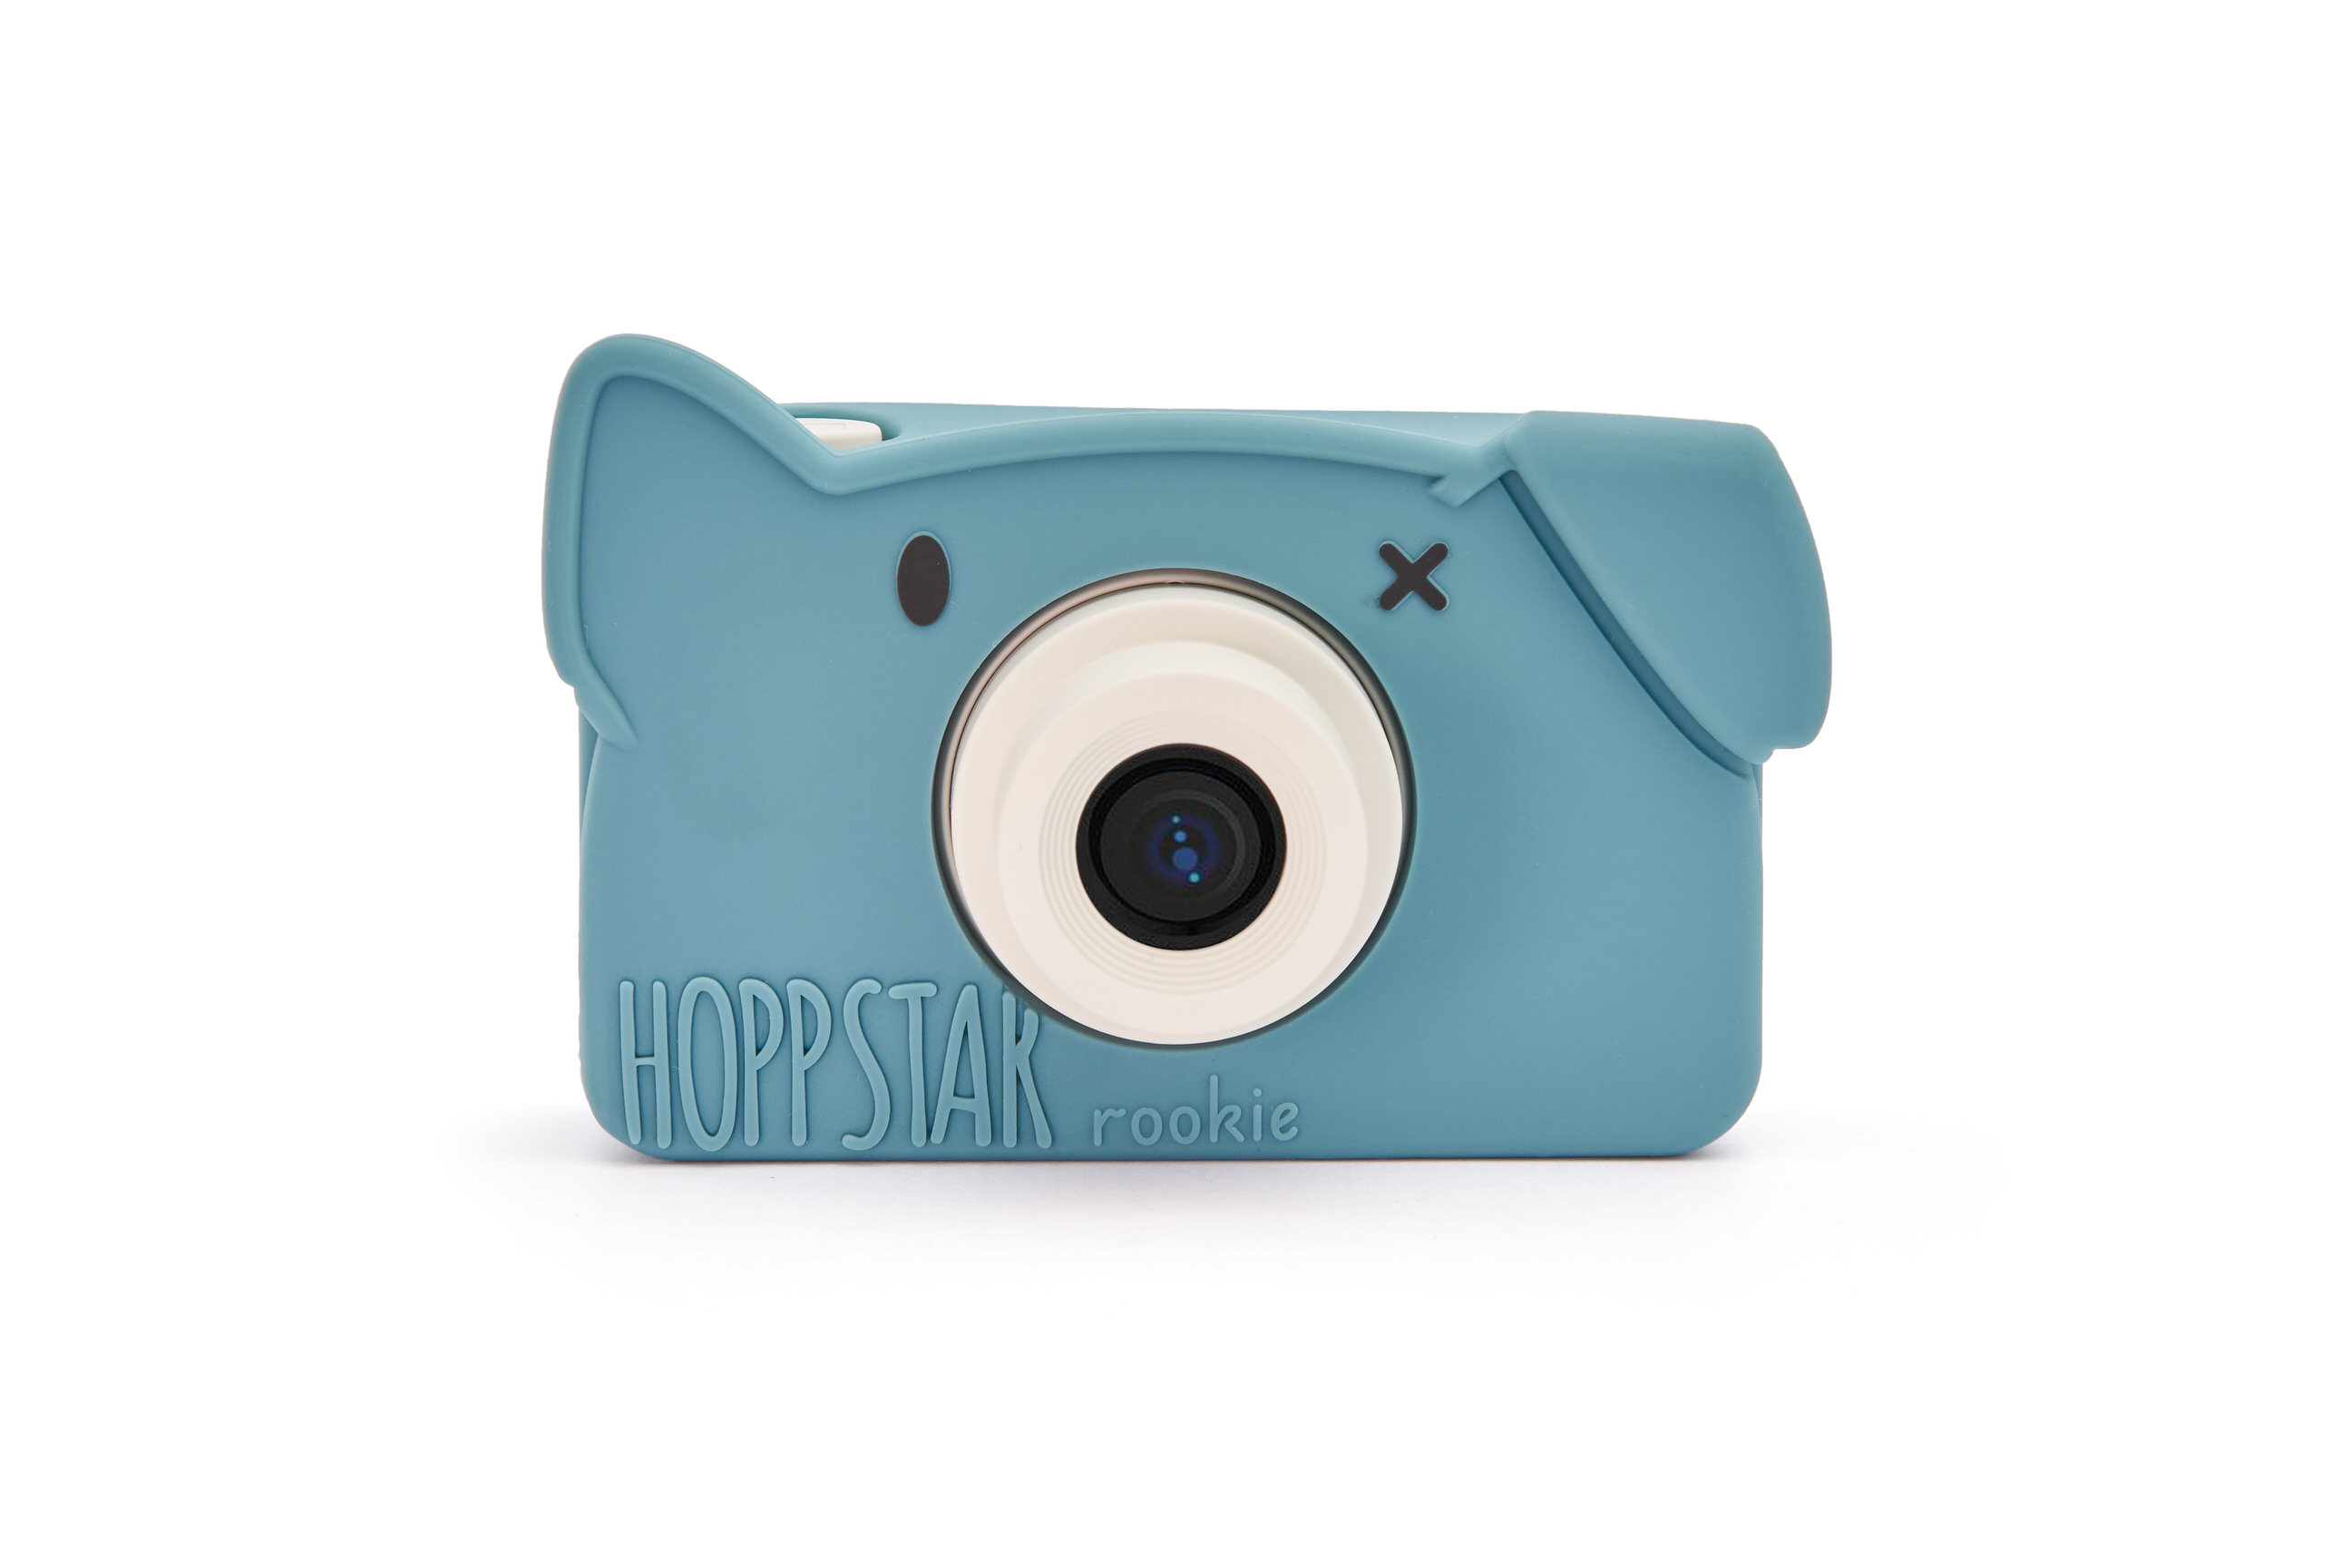 Hoppstar Rookie Kamera mit Bär Yale (blau) Silikonhülle, Frontalansicht